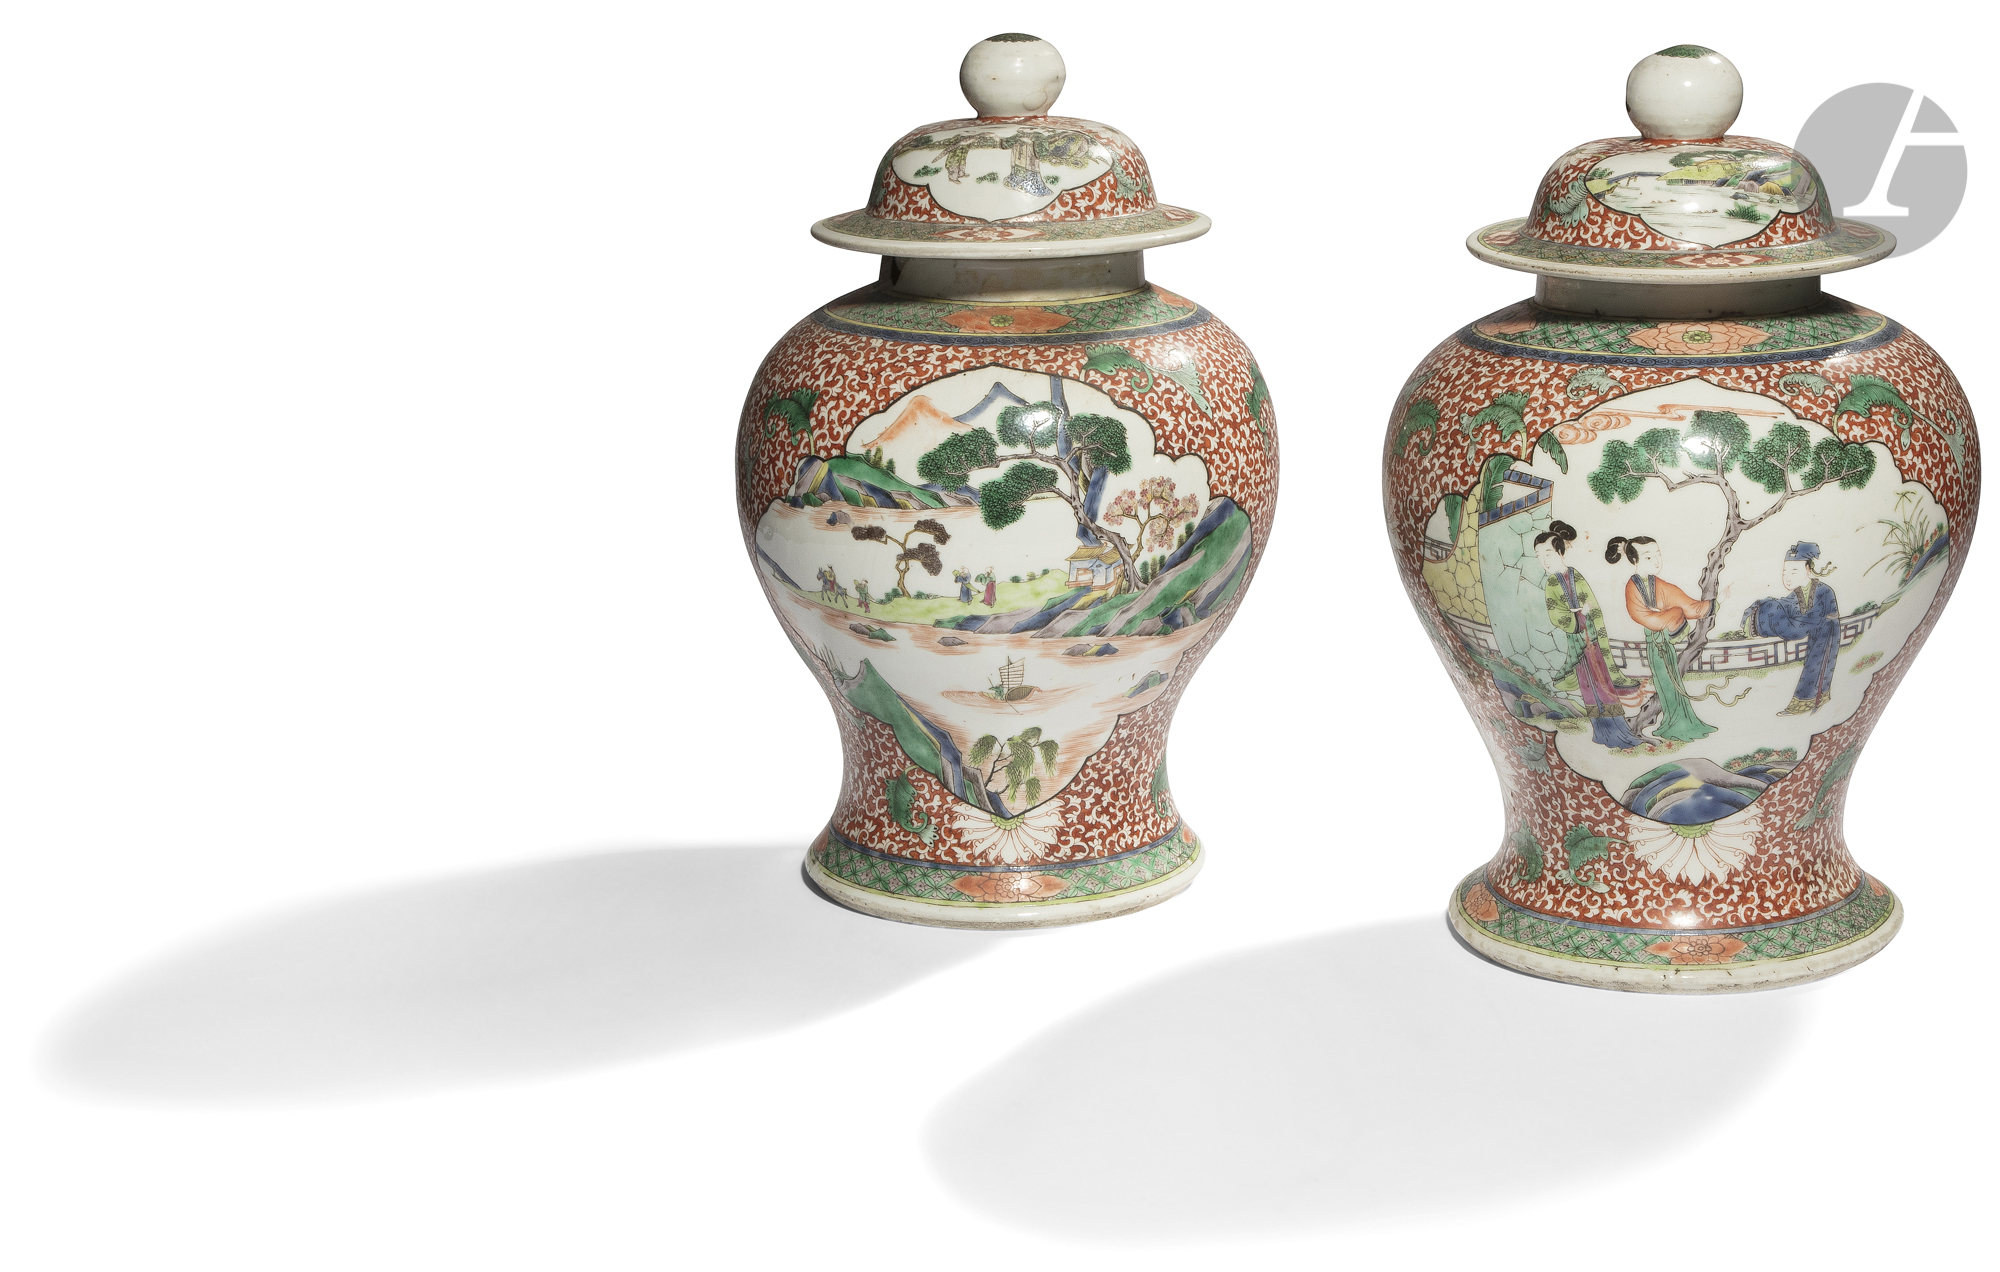 CHINE - Fin XIXe siècle Paire de potiches balustres couvertes en porcelaine émaillée polychrome dans